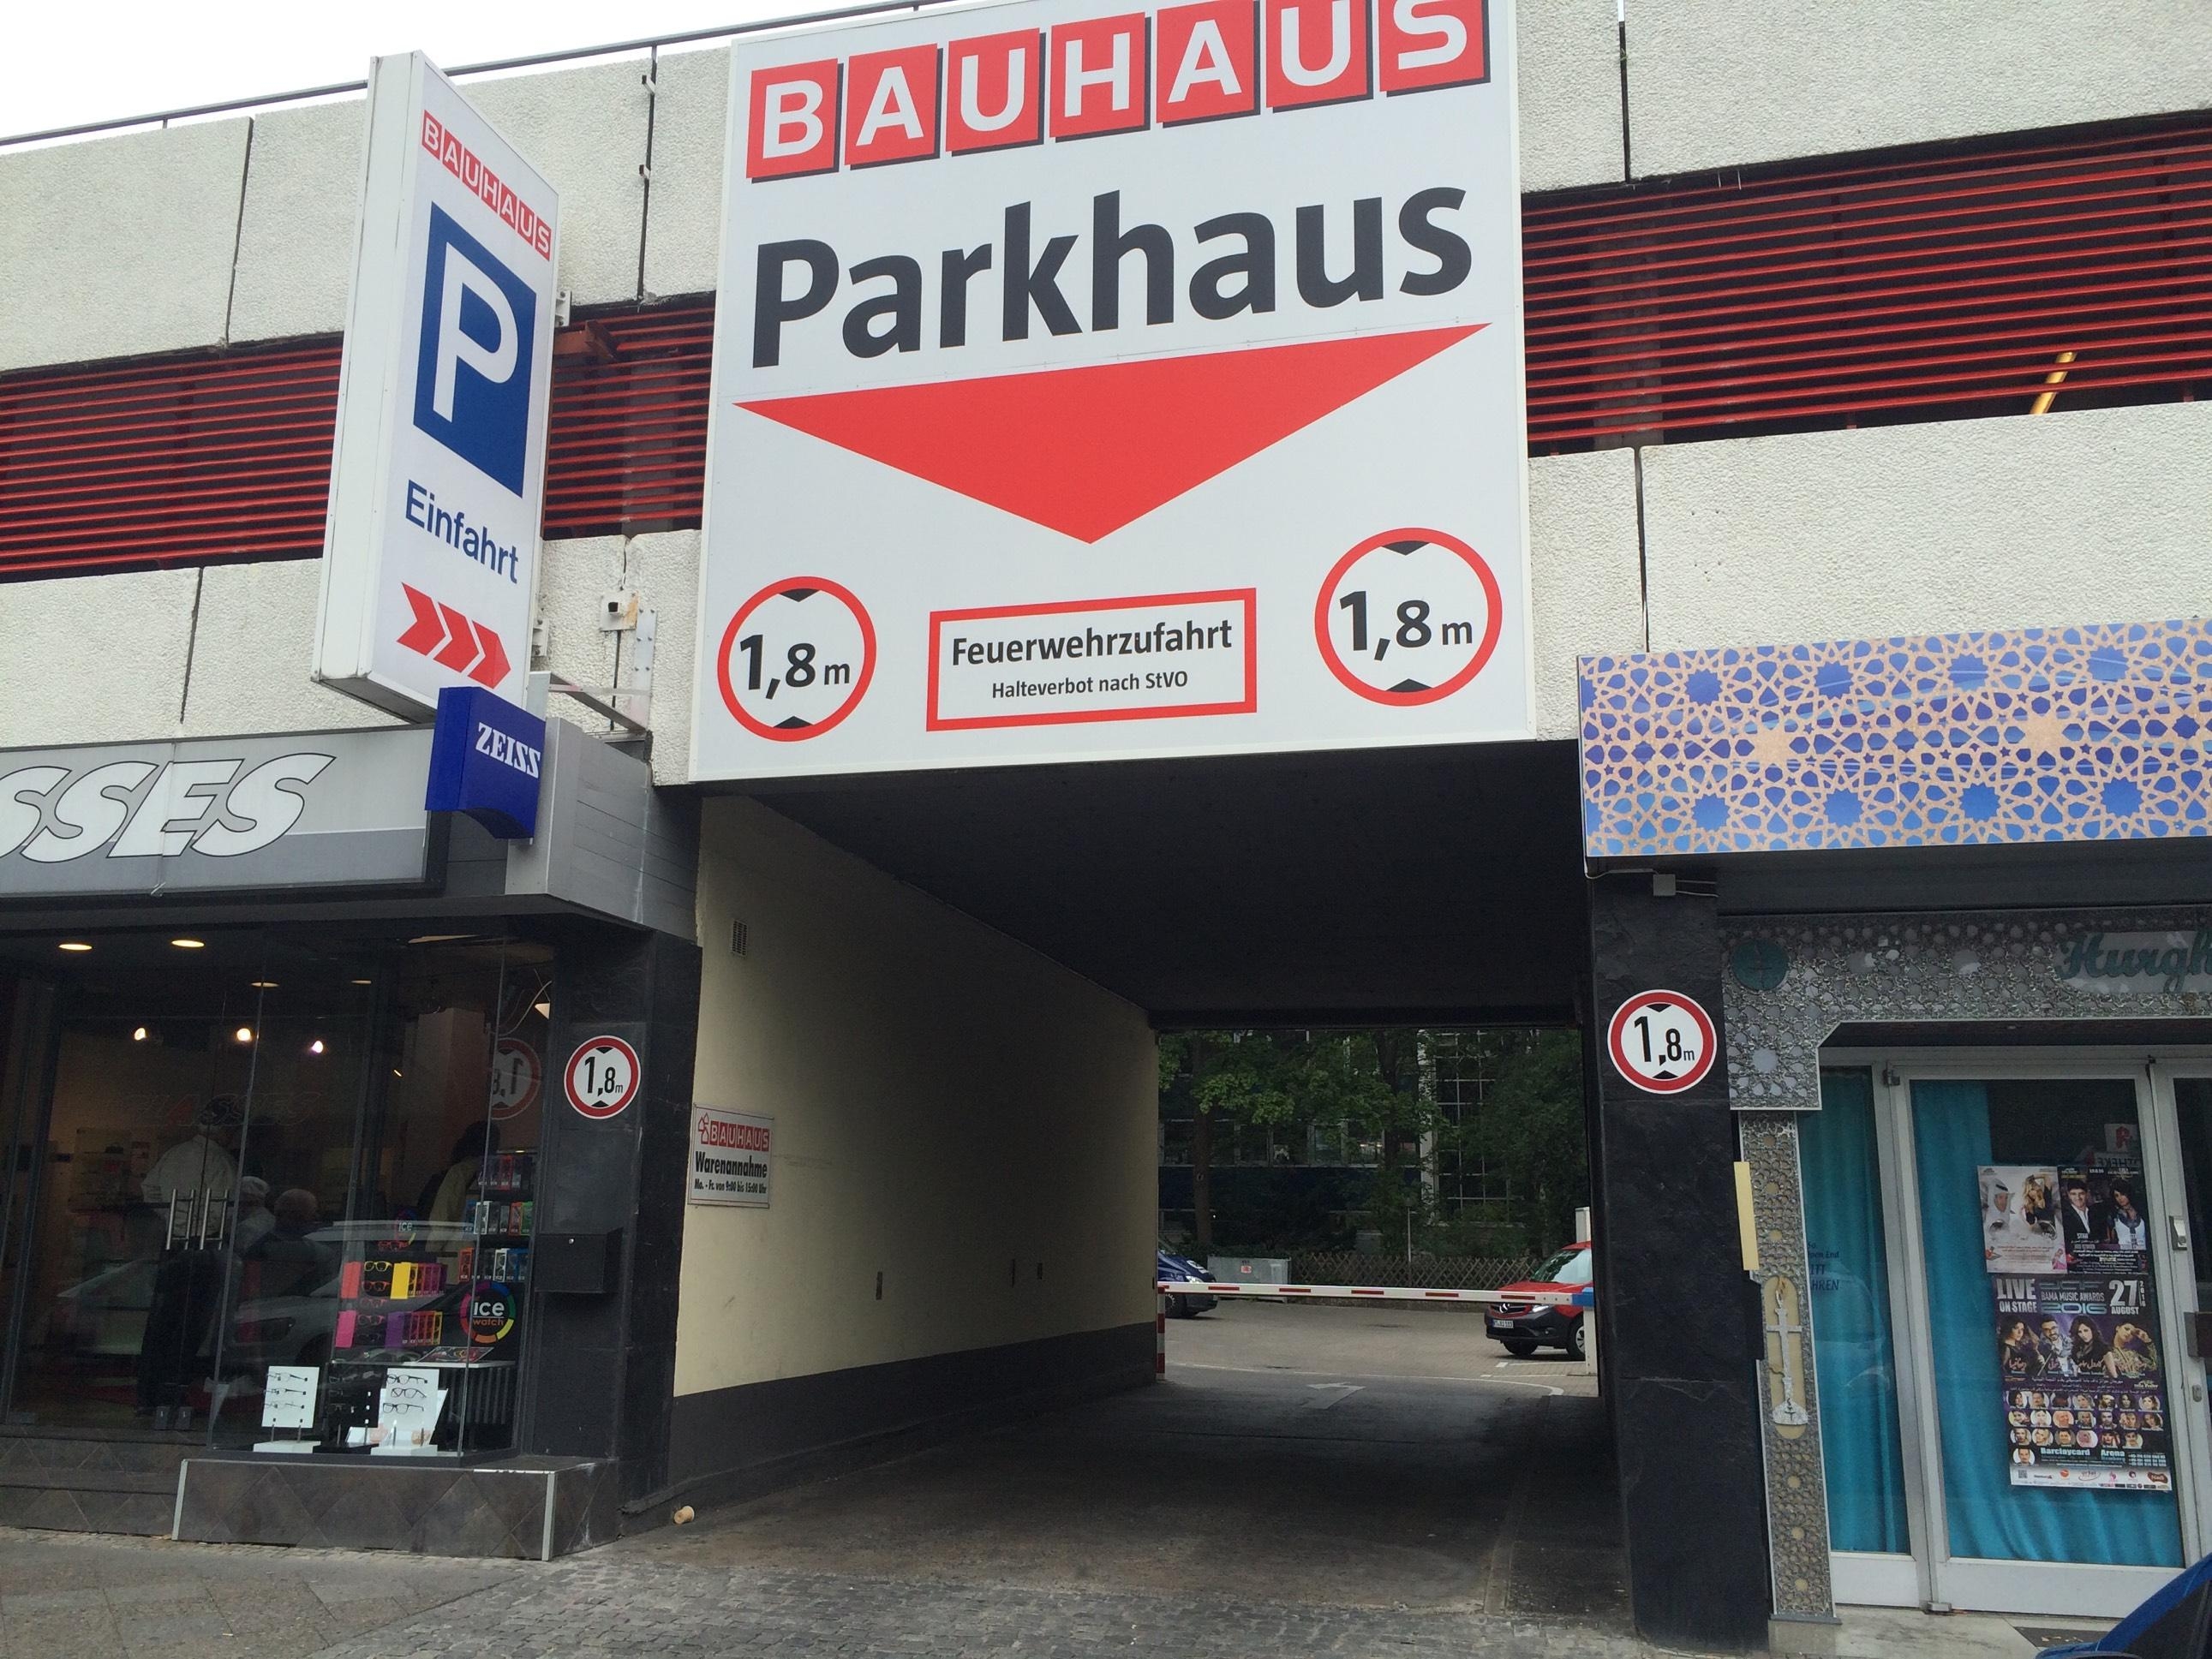 Bauhaus Parkhaus Parking In Berlin Parkme